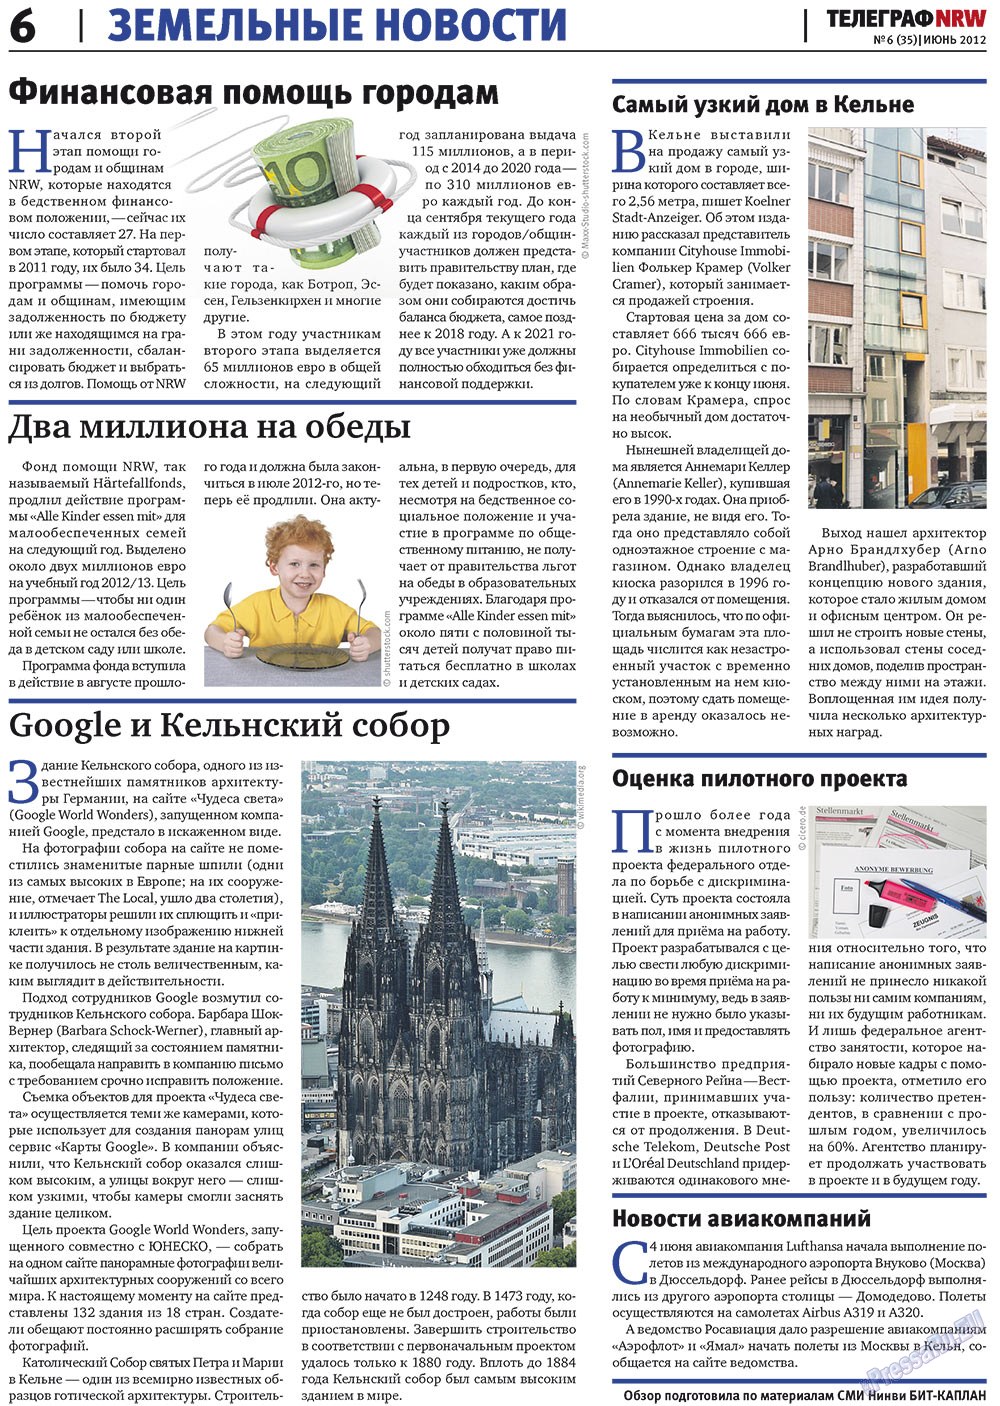 Телеграф NRW (газета). 2012 год, номер 6, стр. 6